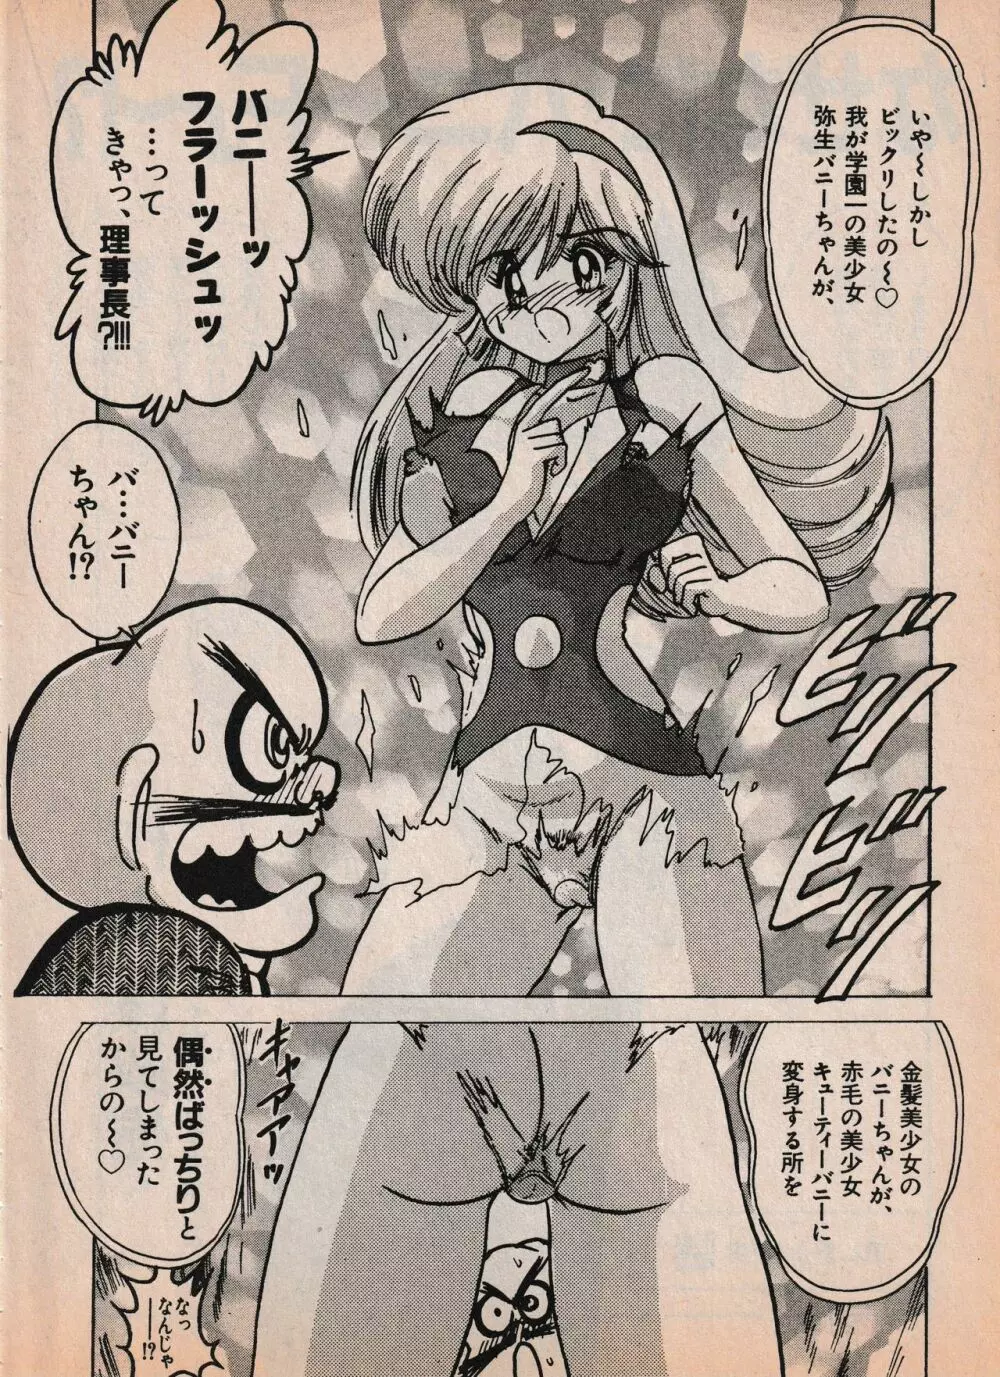 Sailor X vol. 4 – Sailor X vs. Cunty Horny! 15ページ